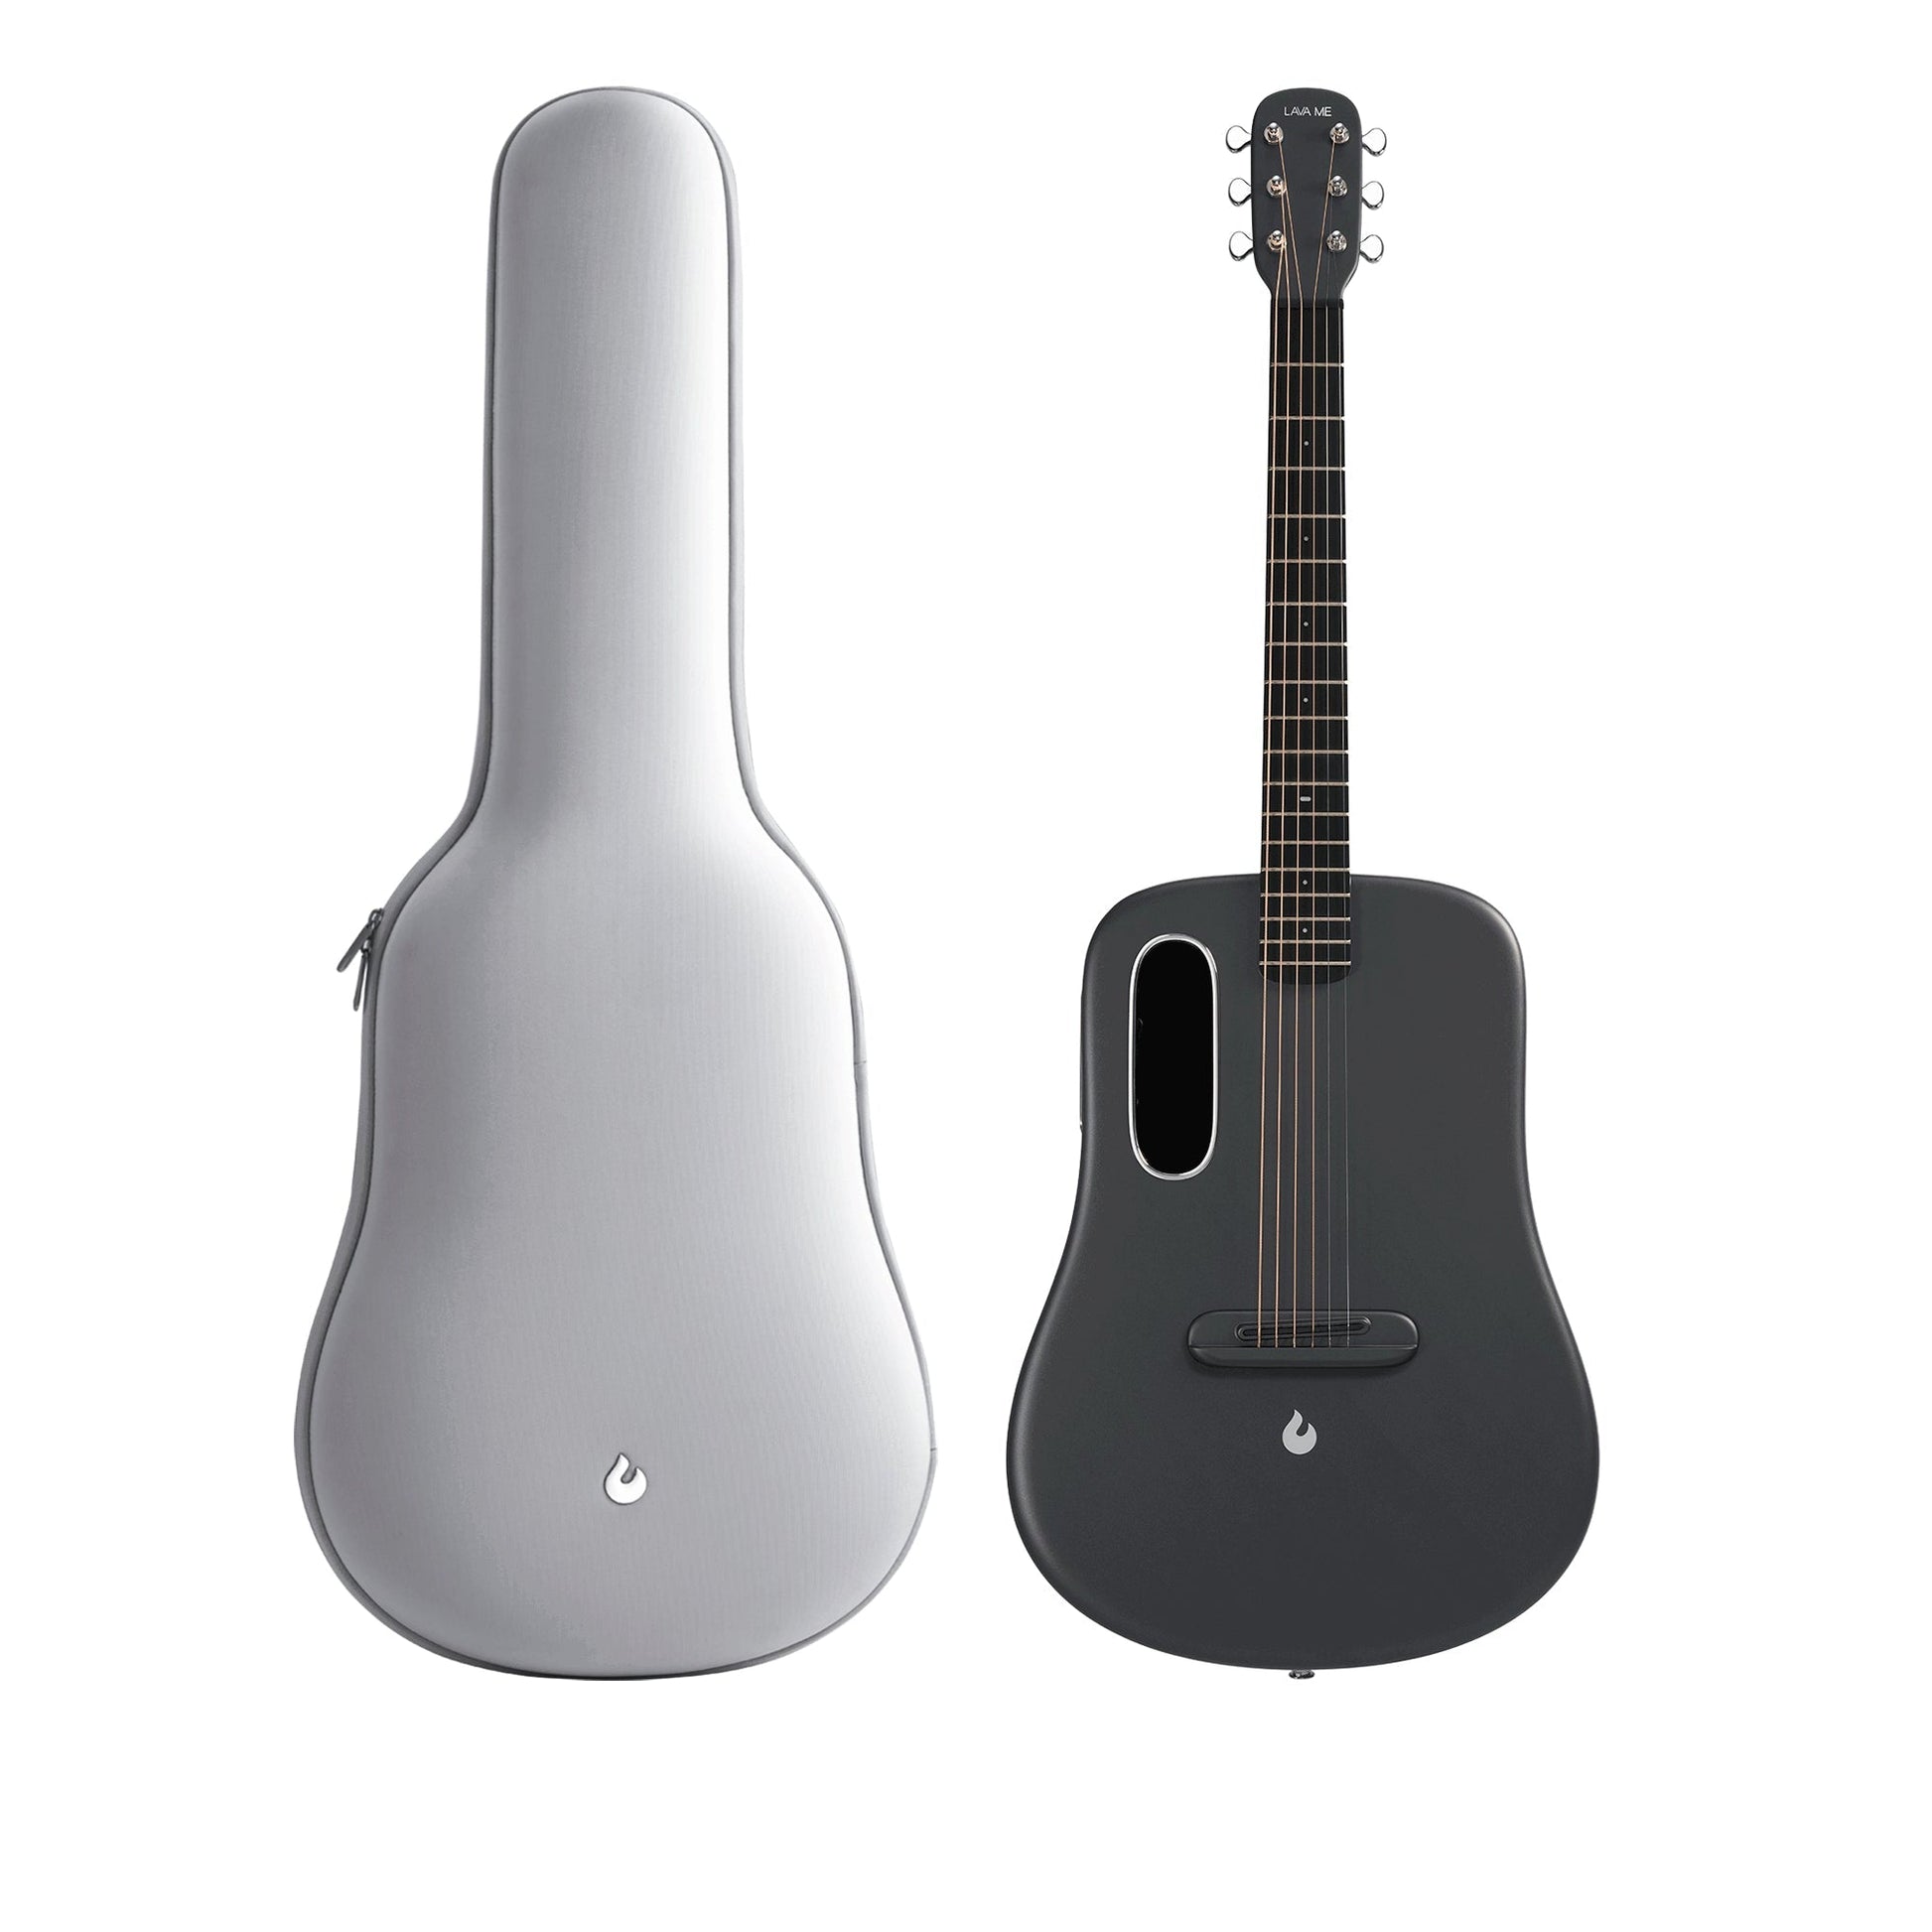 Đàn Guitar Acoustic Lava Me 4 Carbon Fiber - Size 36, Space Gray - Việt Music